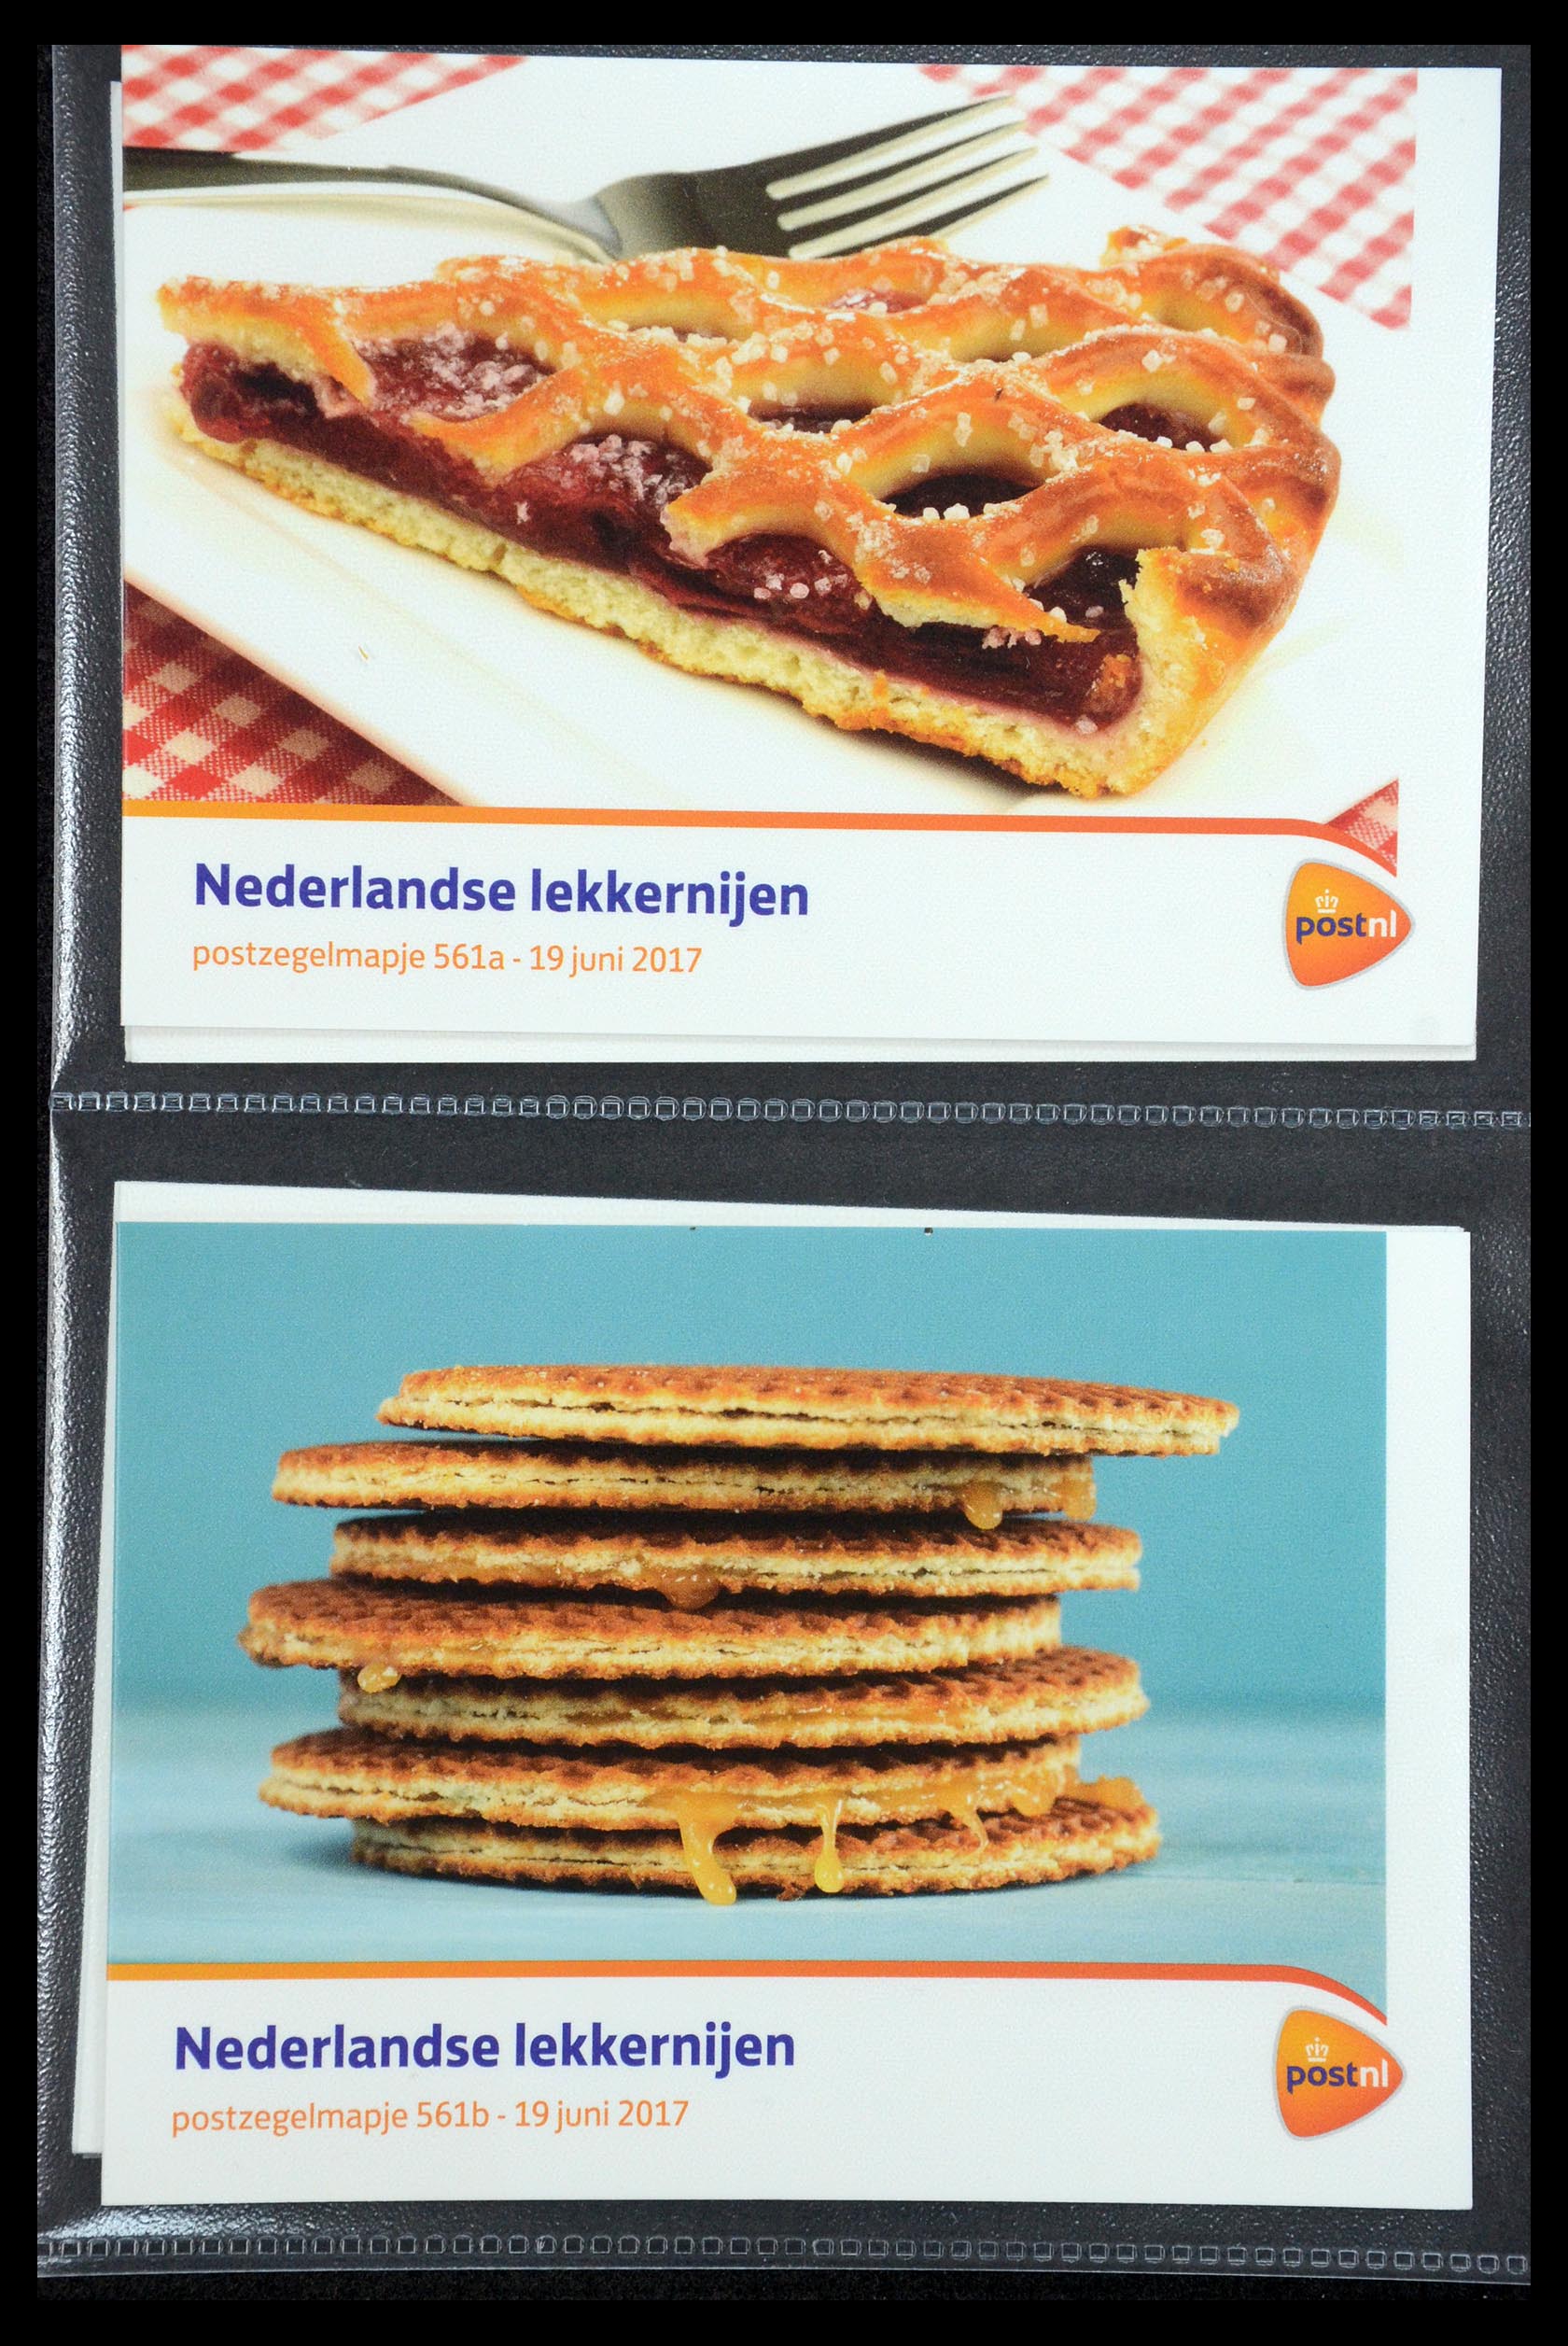 35187 336 - Stamp Collection 35187 Netherlands PTT presentation packs 1982-2019!